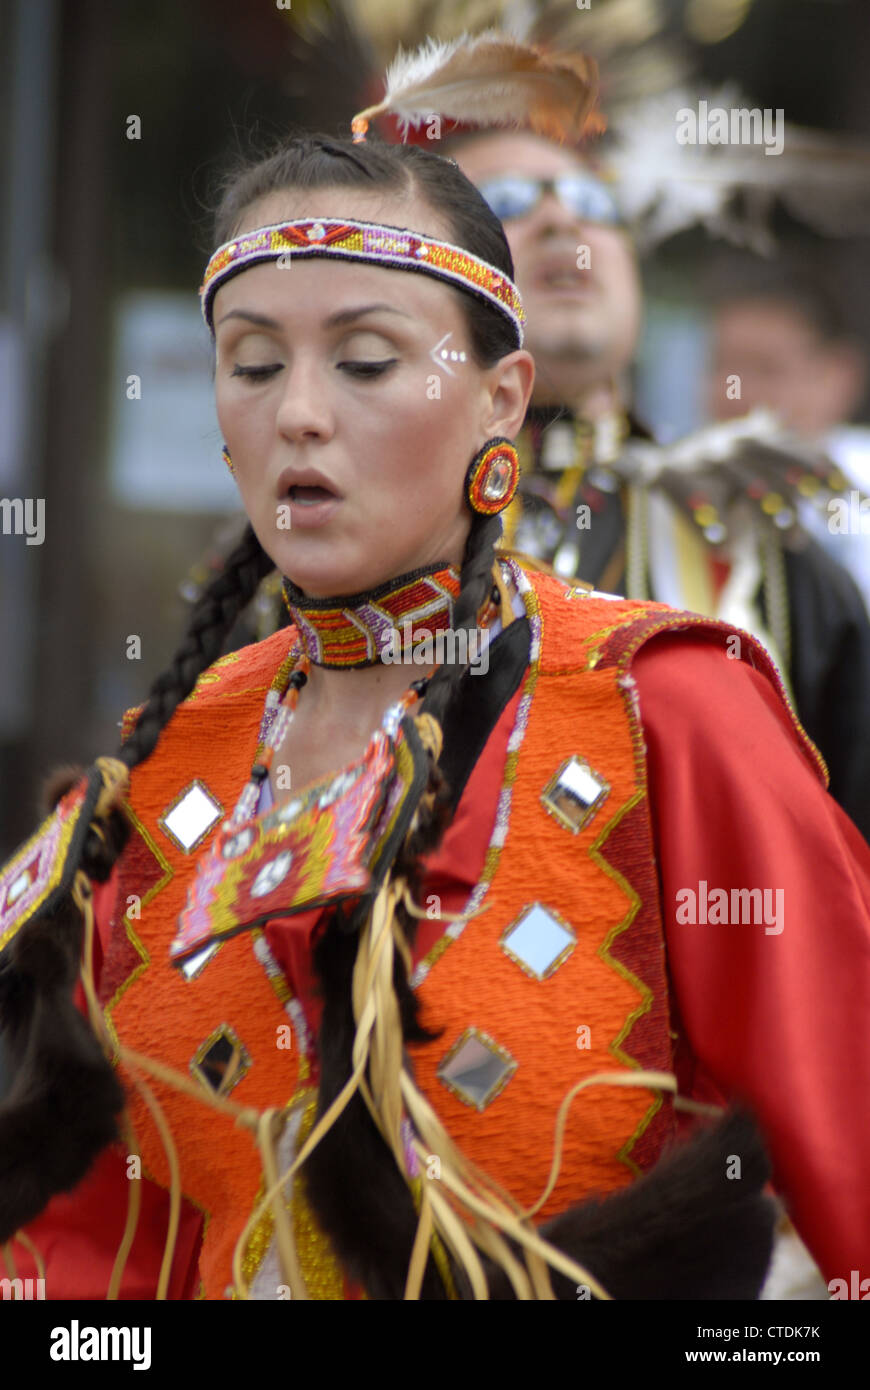 Danseur à la Journée des autochtones de Millbrook, Nouvelle-Écosse Banque D'Images